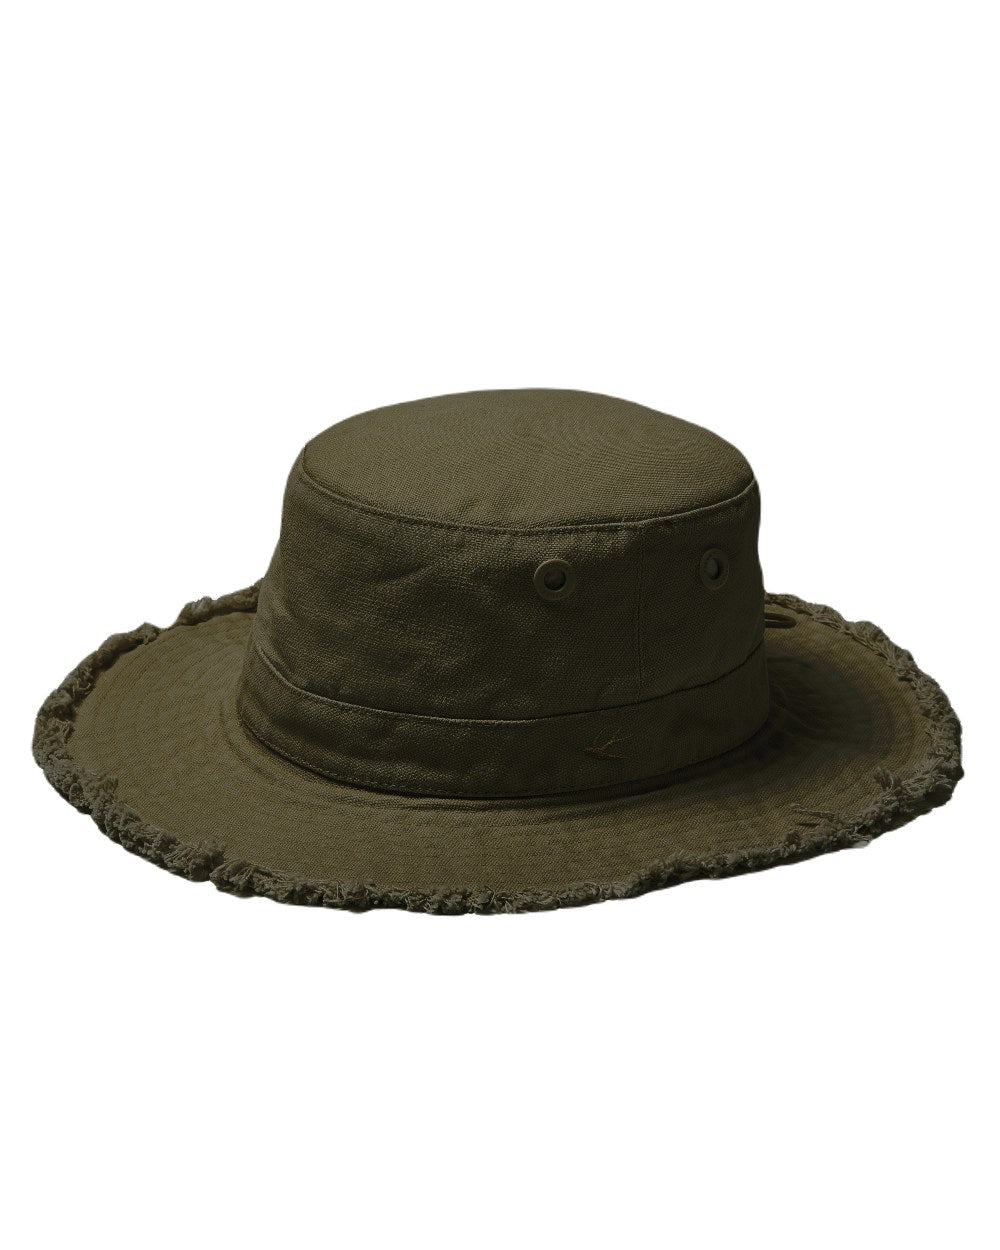 Dark Pine Coloured Tilley Hat Fringe Wanderer On A White Background 